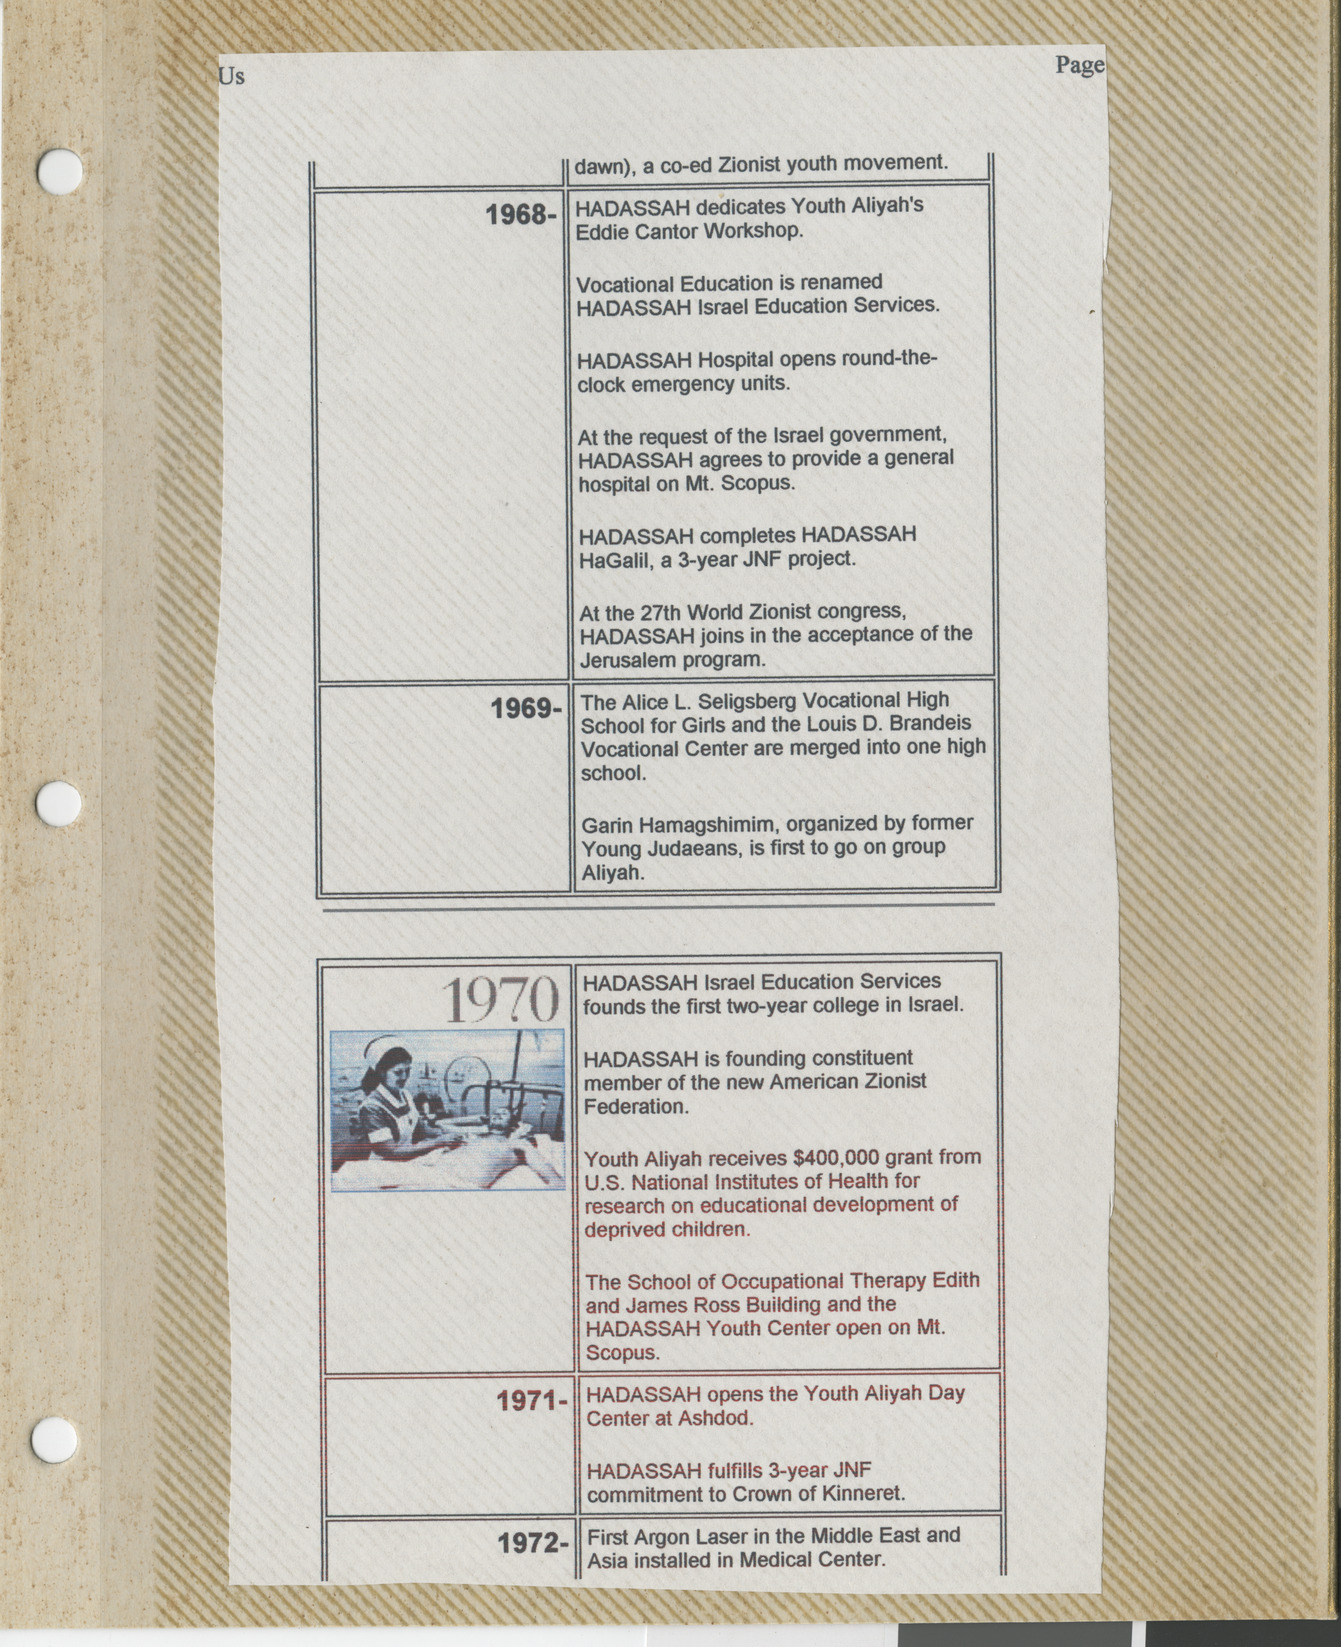 Clipping, Hadassah timeline 1968-1972